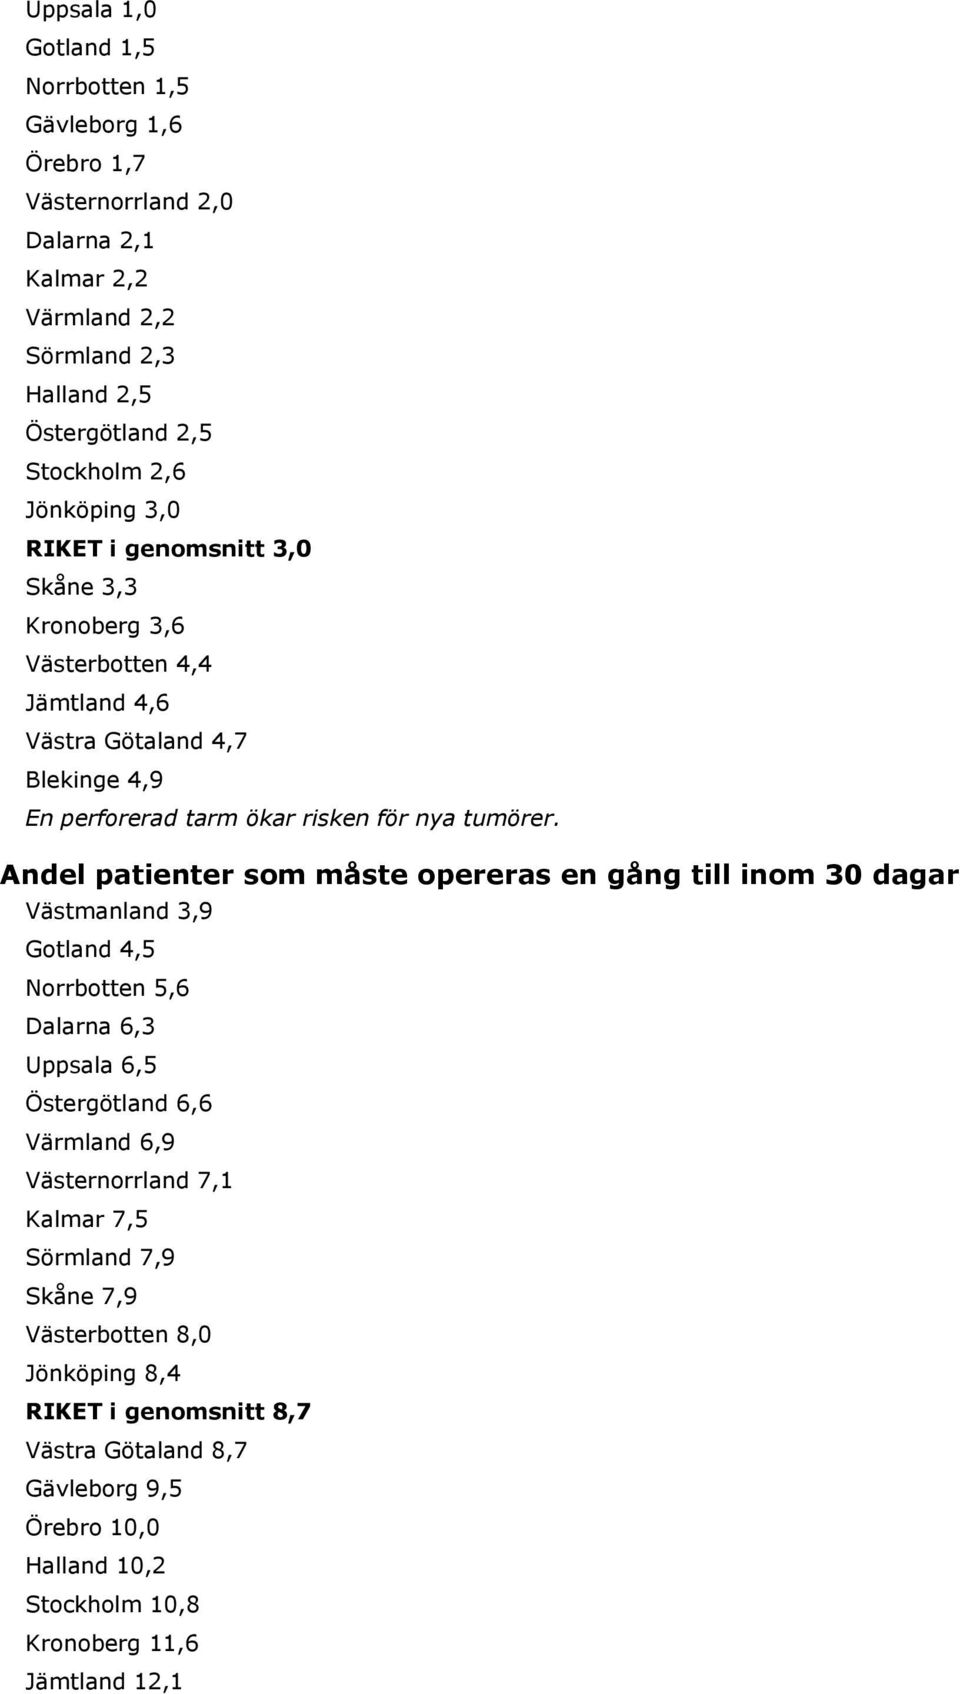 Andel patienter som måste opereras en gång till inom 30 dagar Västmanland 3,9 Gotland 4,5 Norrbotten 5,6 Dalarna 6,3 Uppsala 6,5 Östergötland 6,6 Värmland 6,9 Västernorrland 7,1